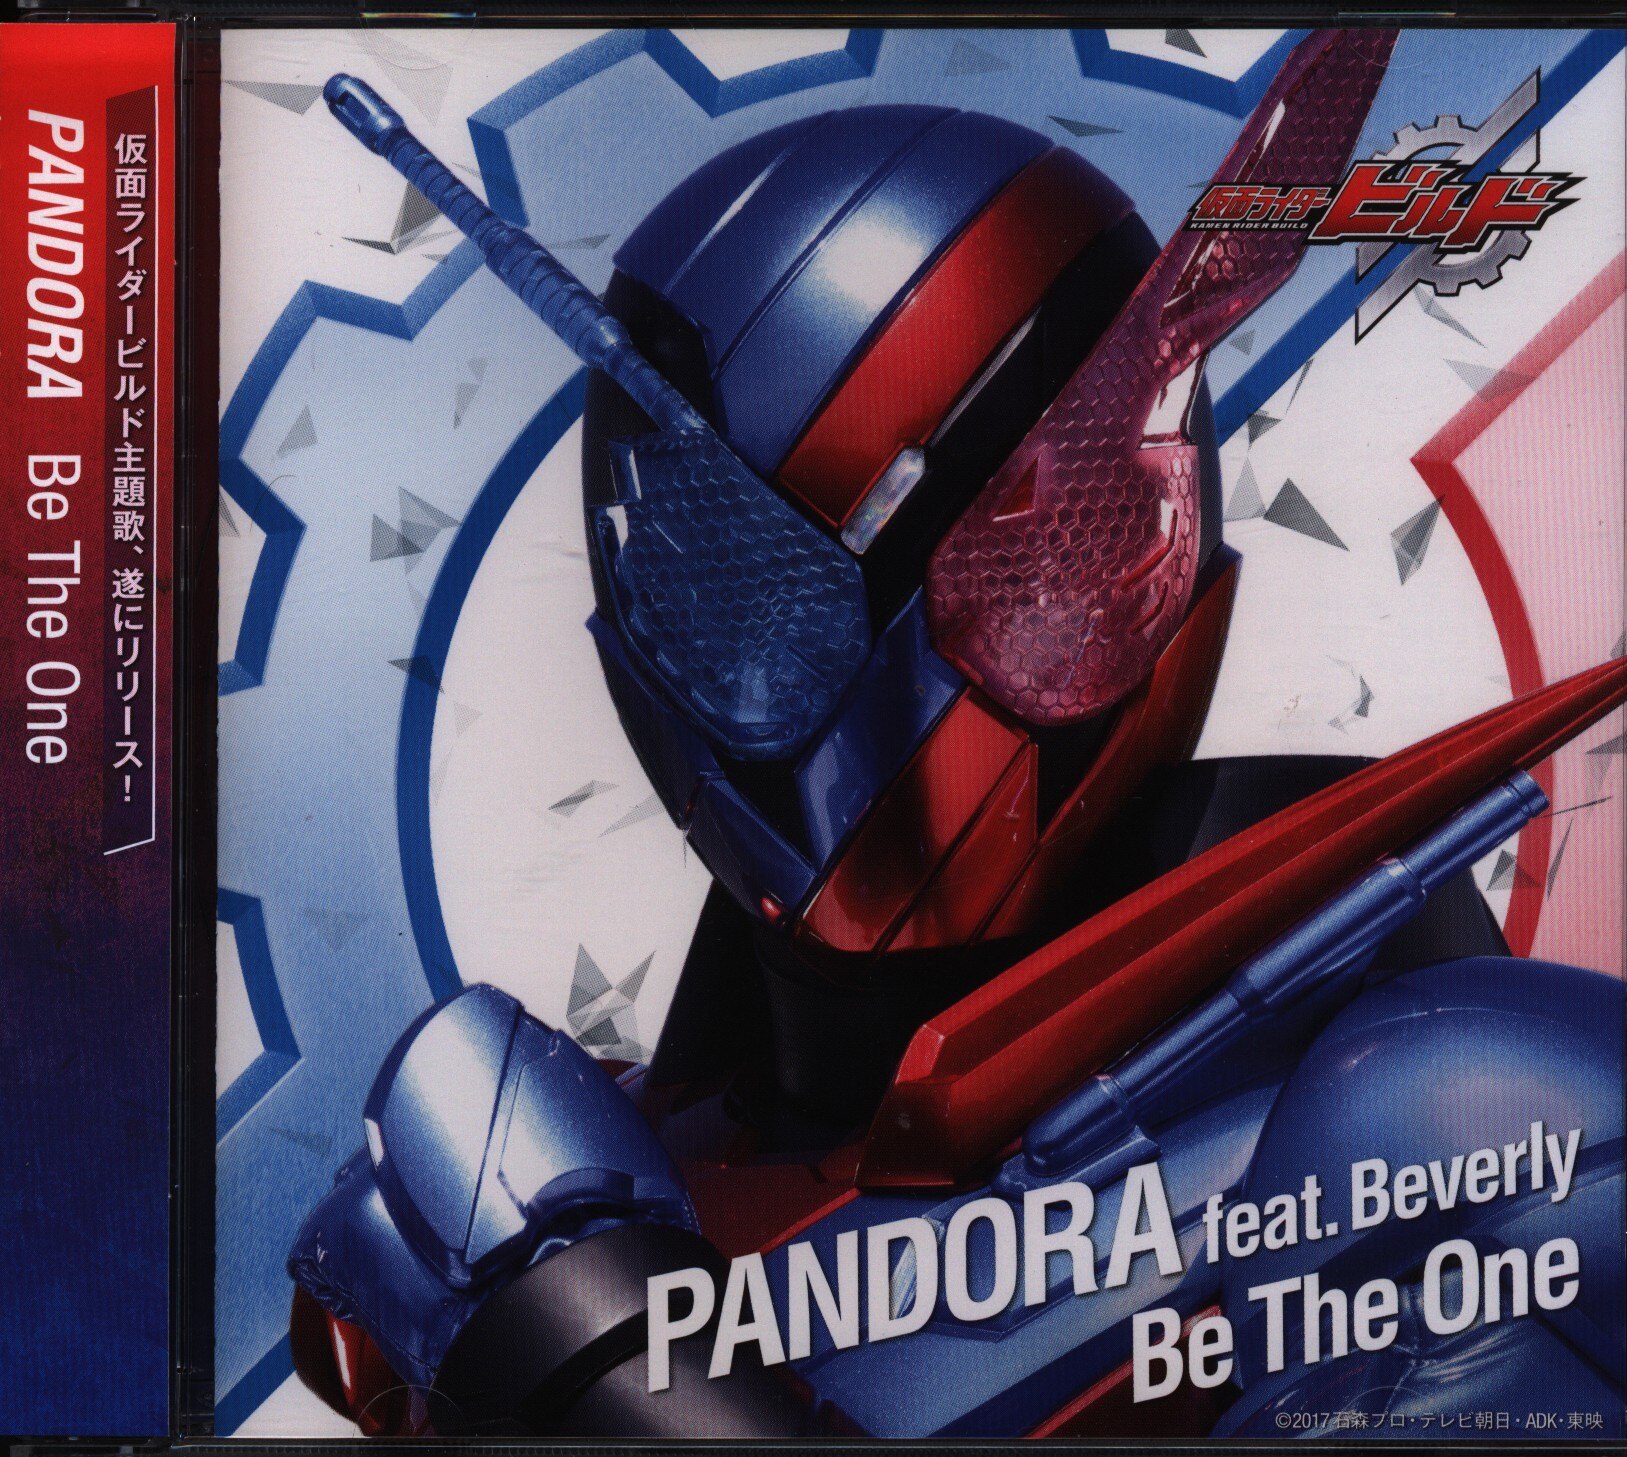 仮面ライダーcd 仮面ライダービルド Pandora Feat Beverly Be The One 通常盤 まんだらけ Mandarake